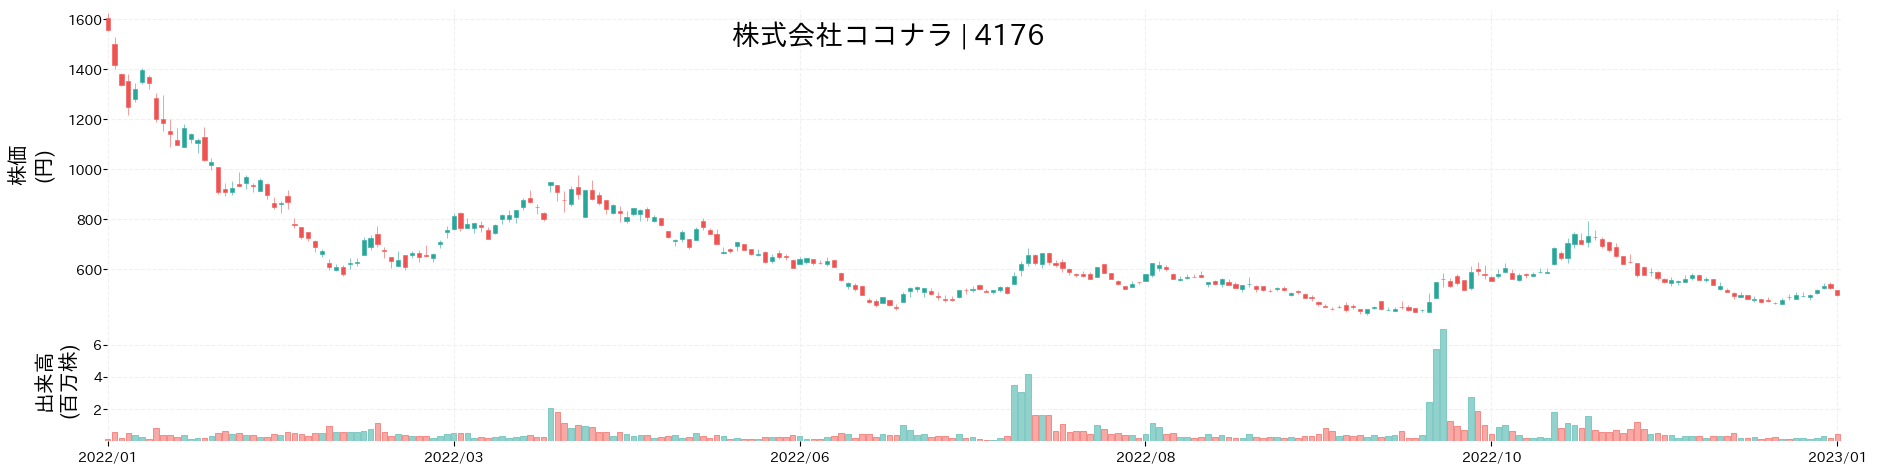 ココナラの株価推移(2022)